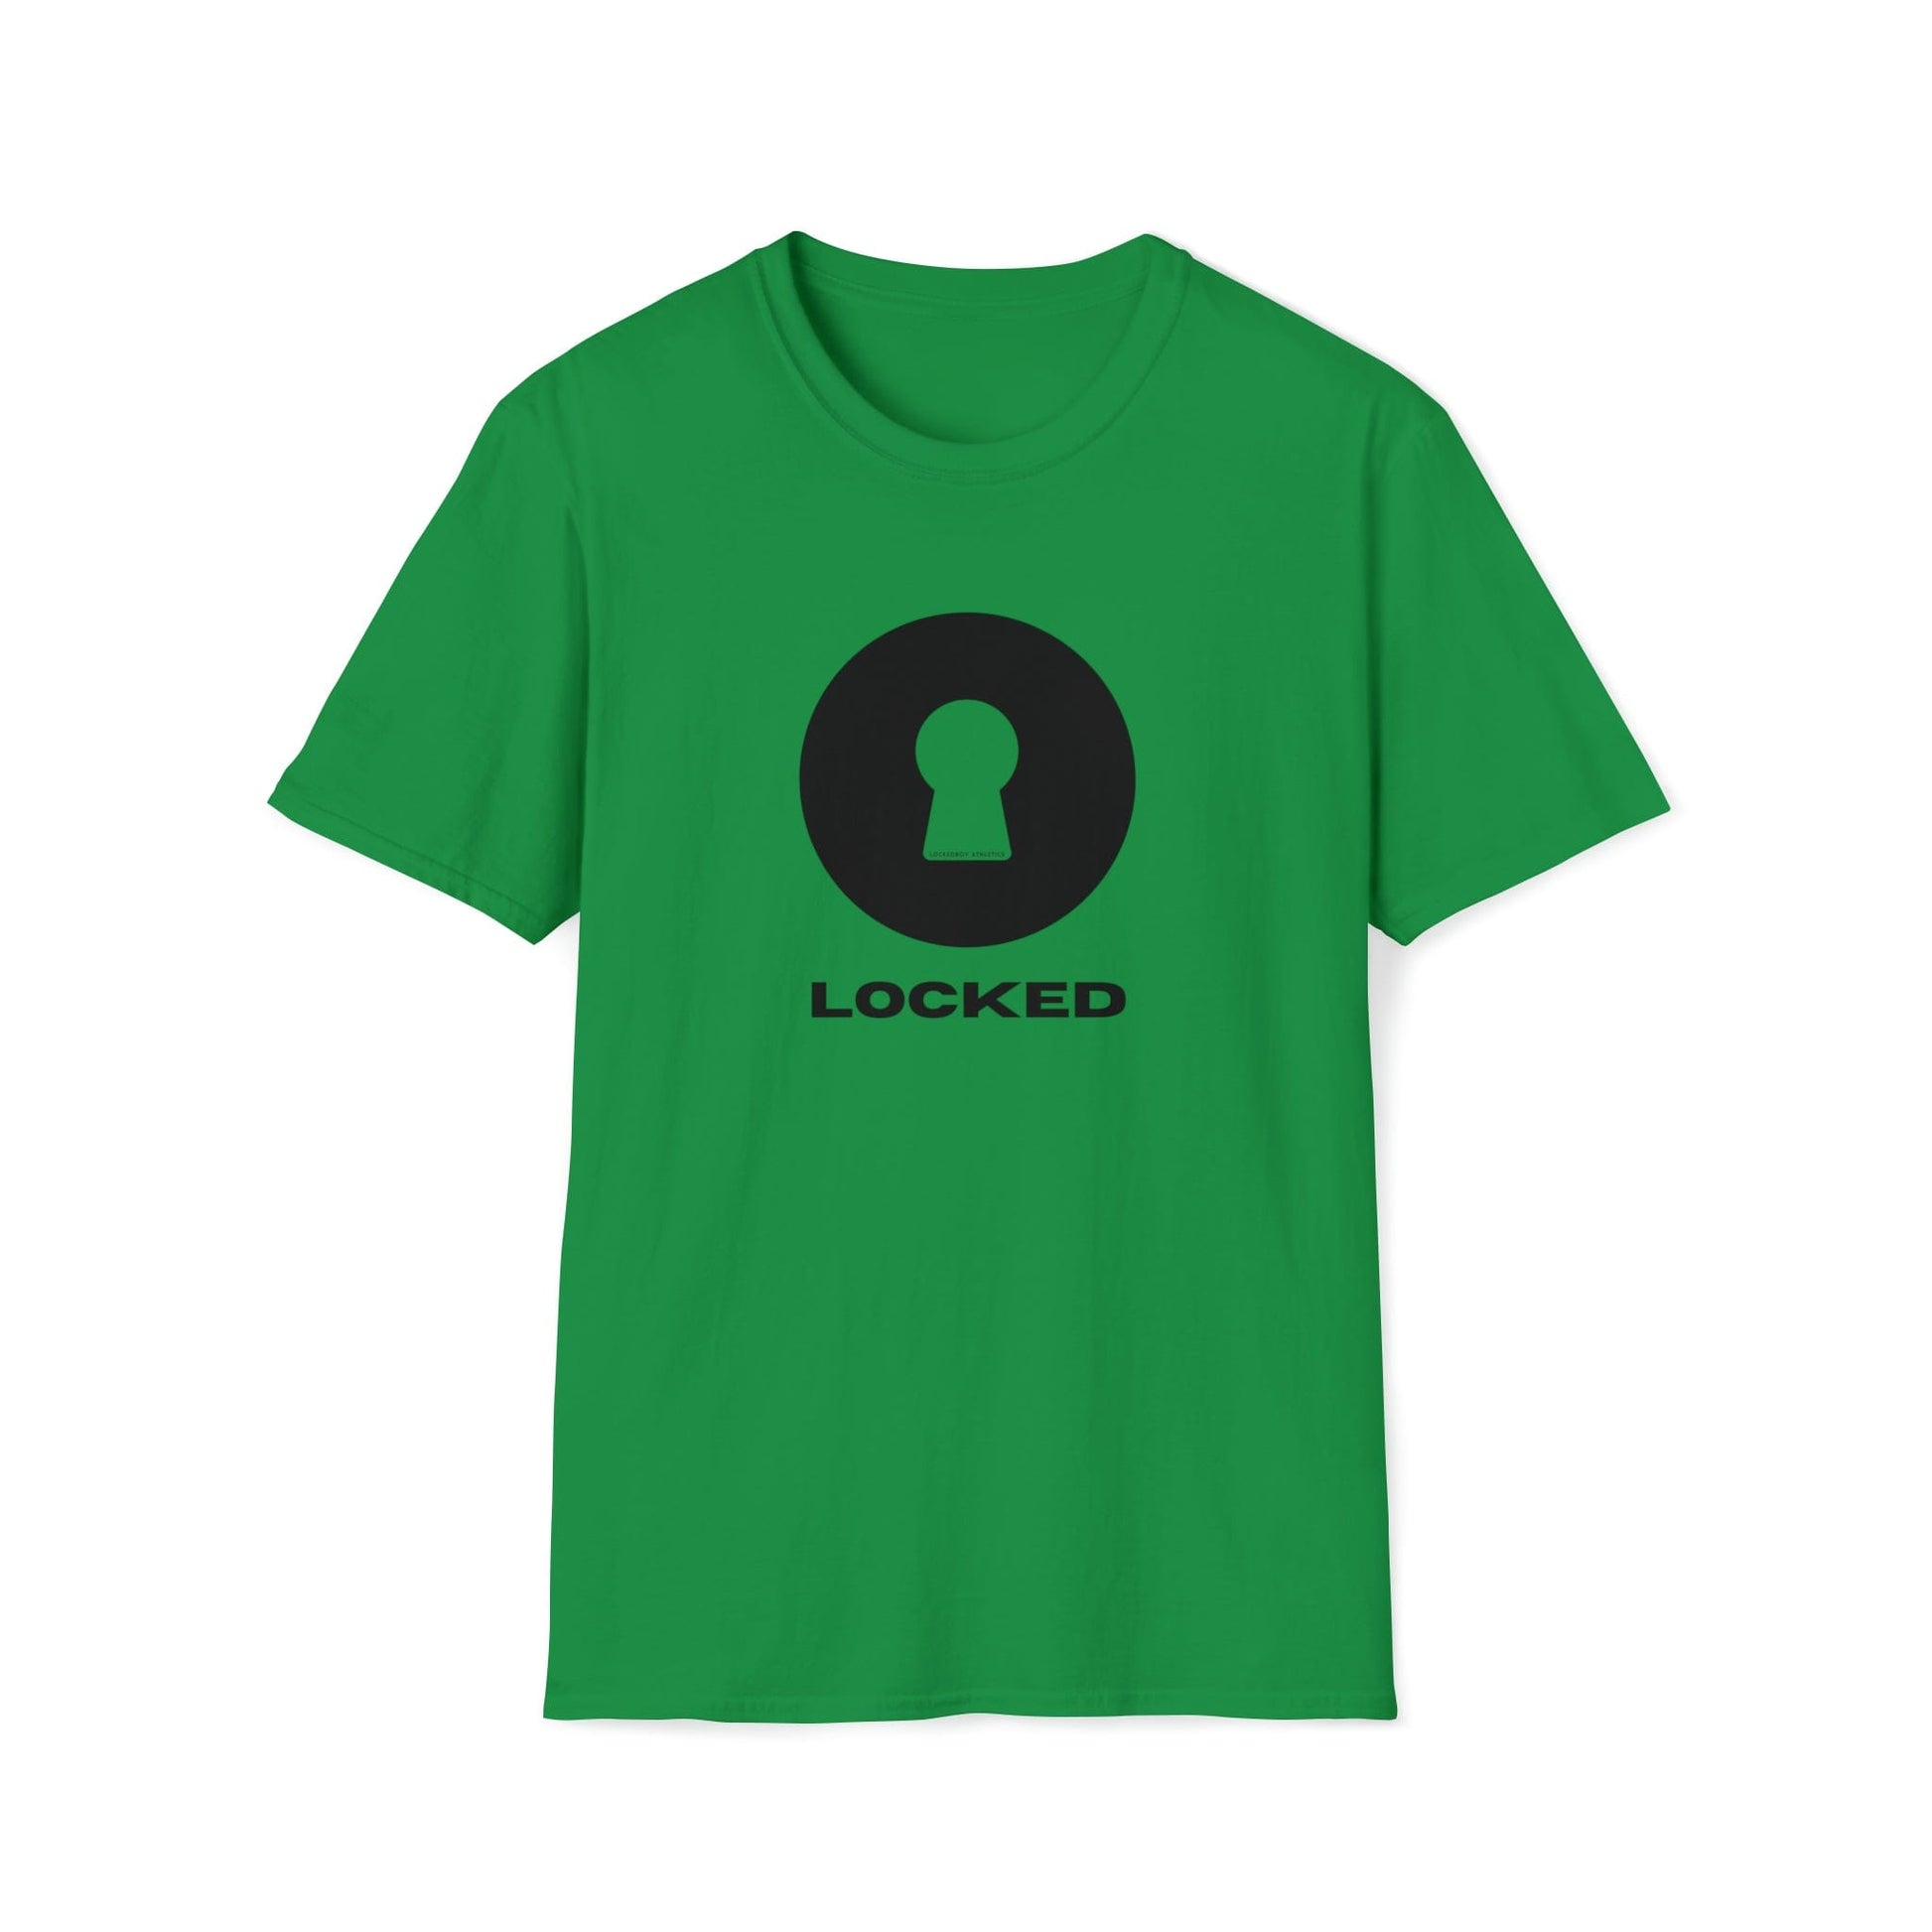 T-Shirt Irish Green / S Boldly Locked - Lockedboy Athletics Chastity Tshirt LEATHERDADDY BATOR